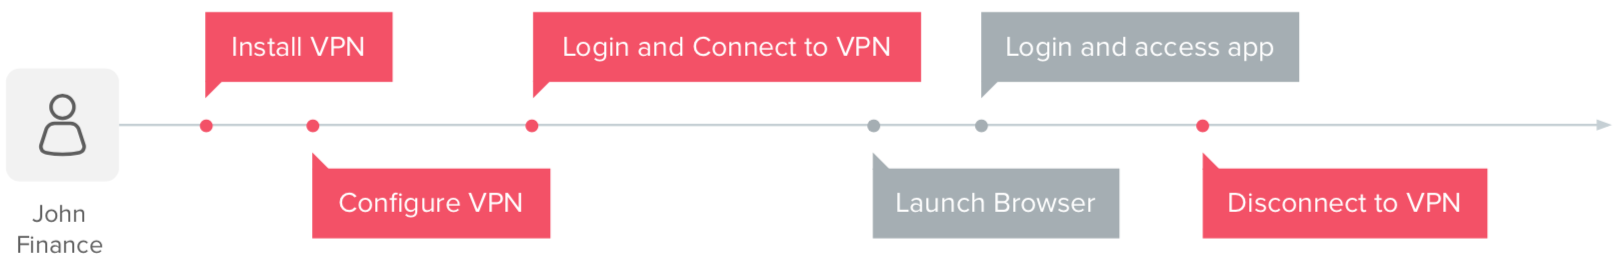 Steps to access on prem app on VPN